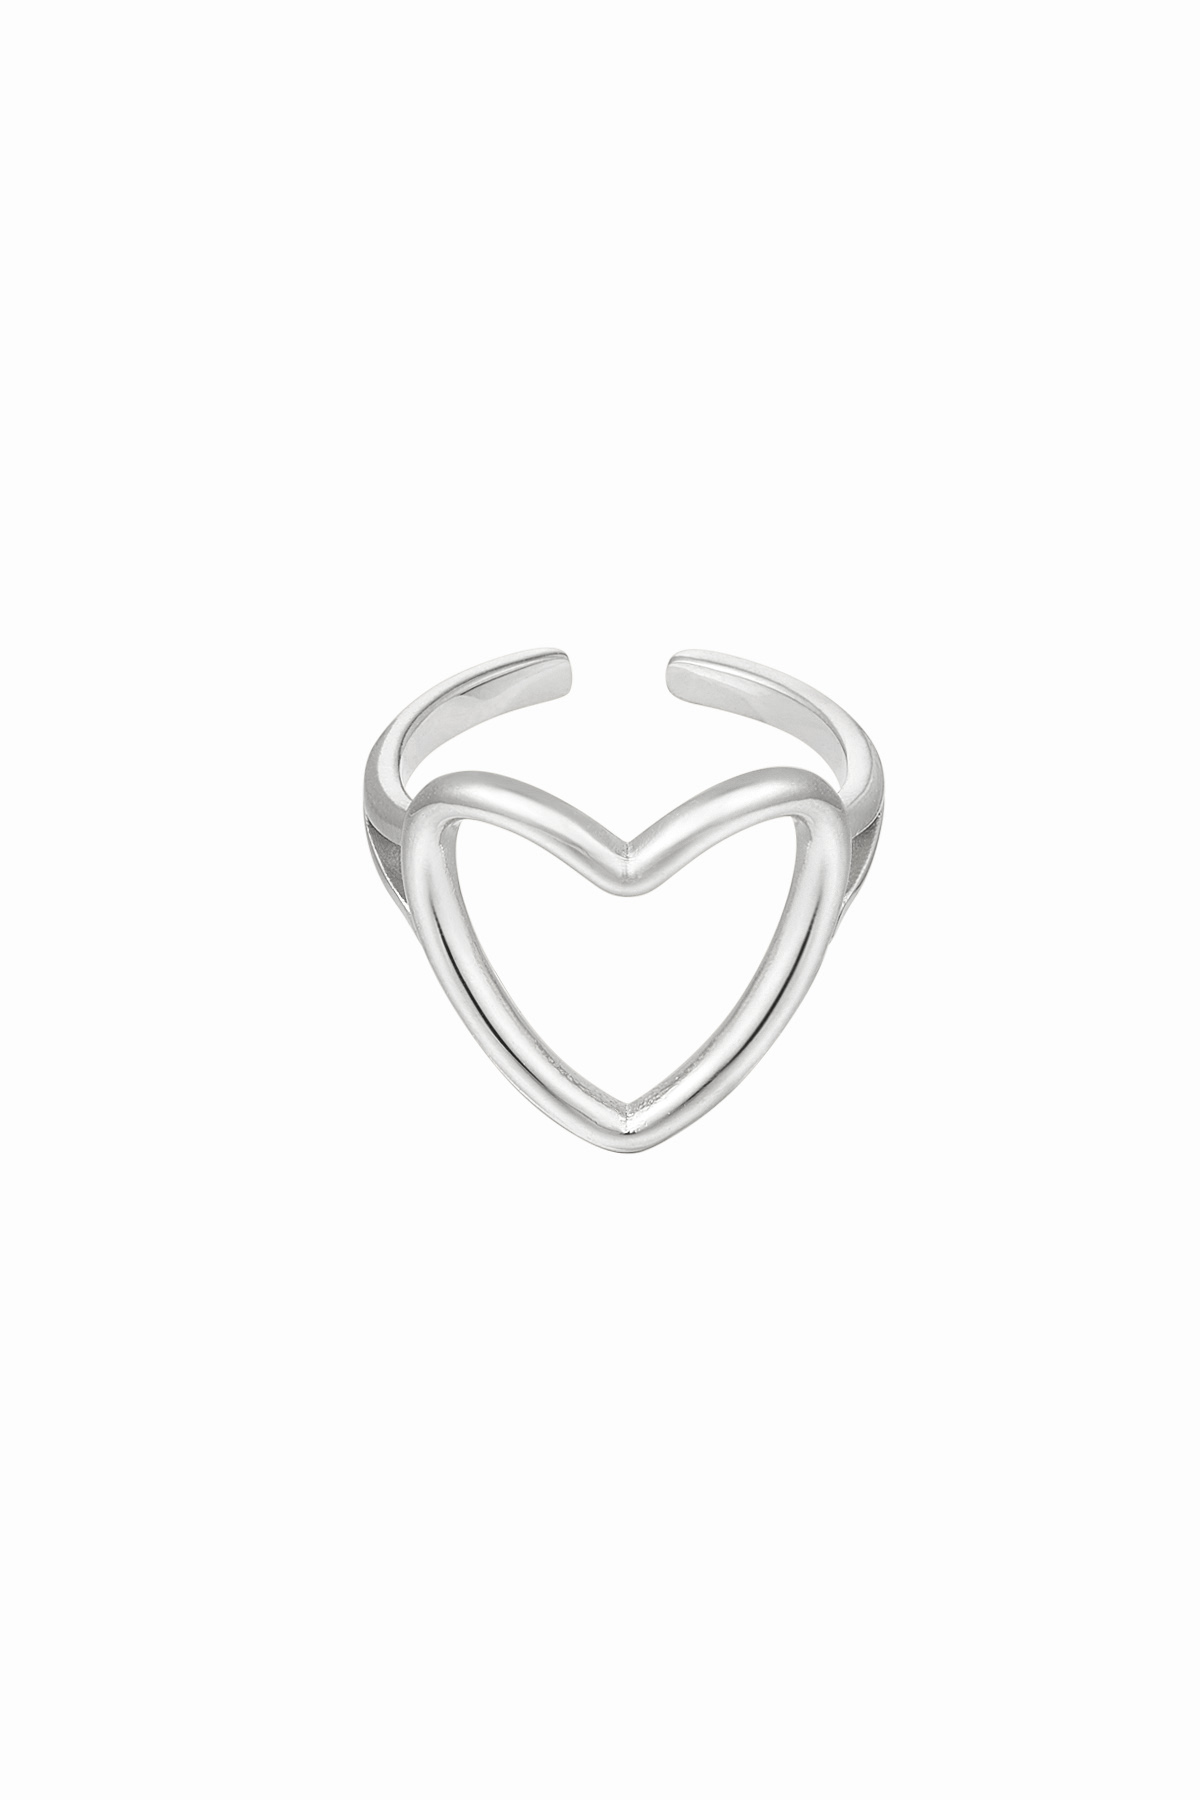 Wholesale Rings Suppliers | Yehwang Jewelry